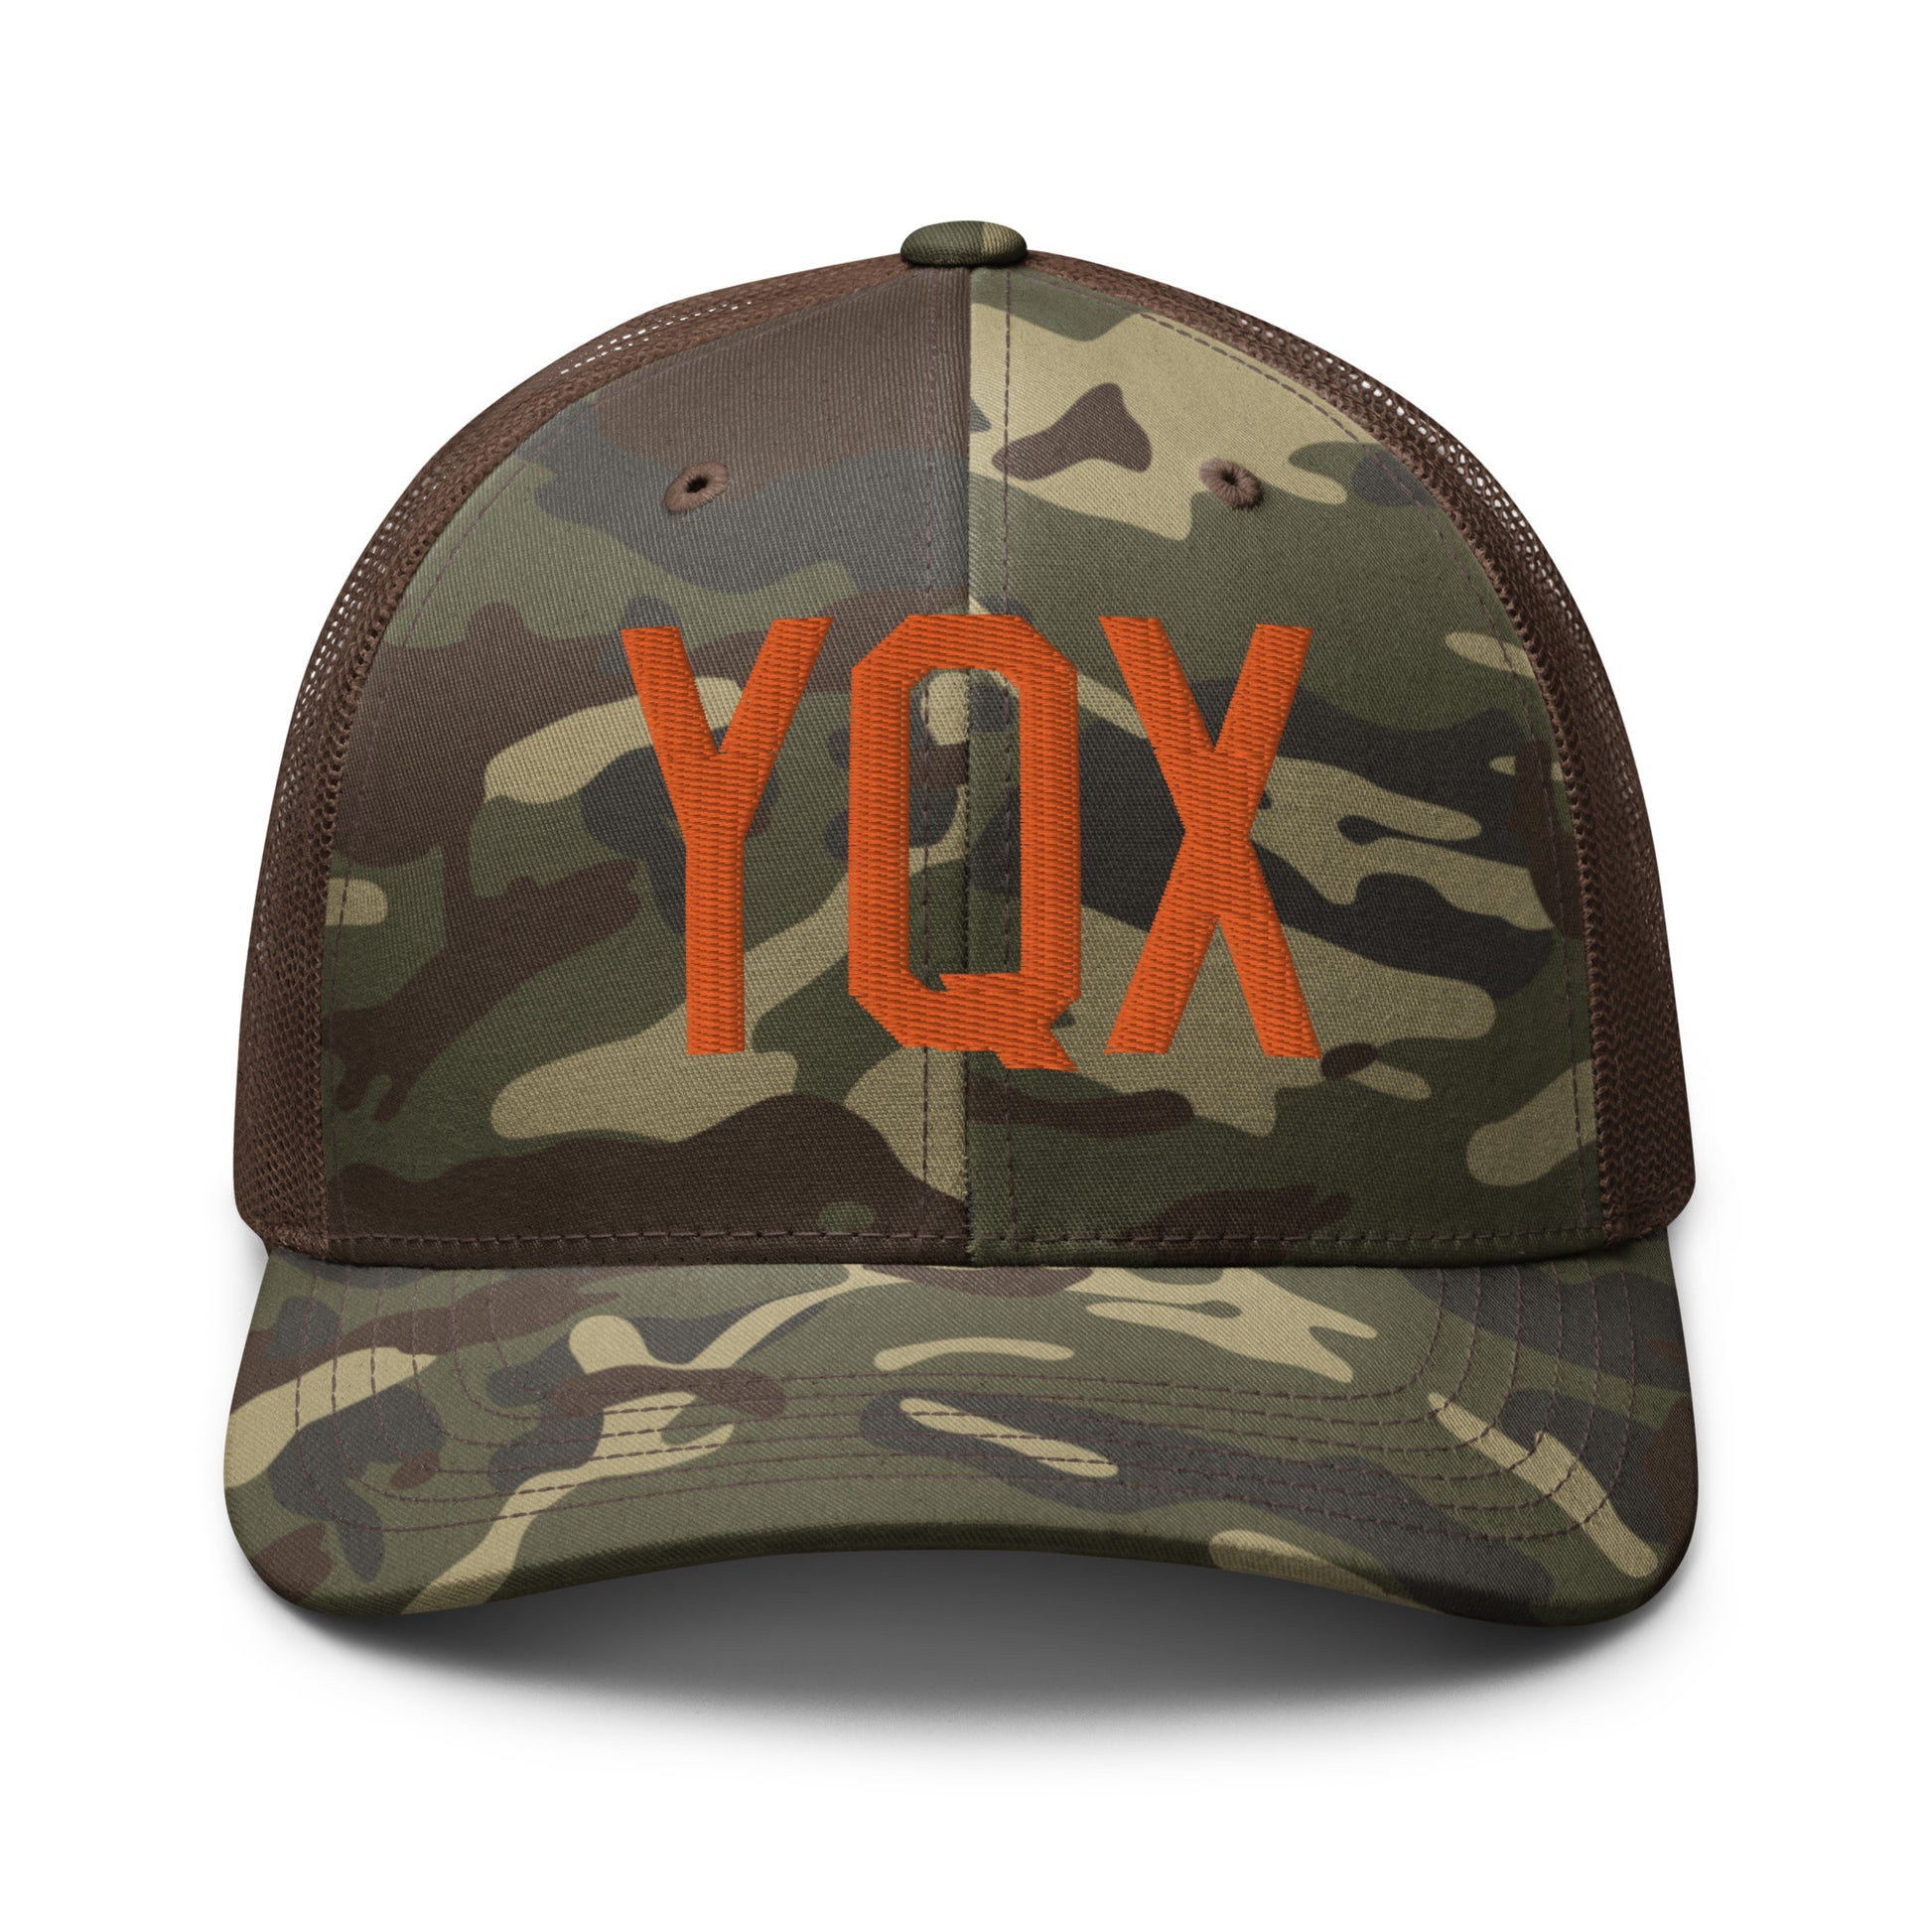 Airport Code Camouflage Trucker Hat - Orange • YQX Gander • YHM Designs - Image 13